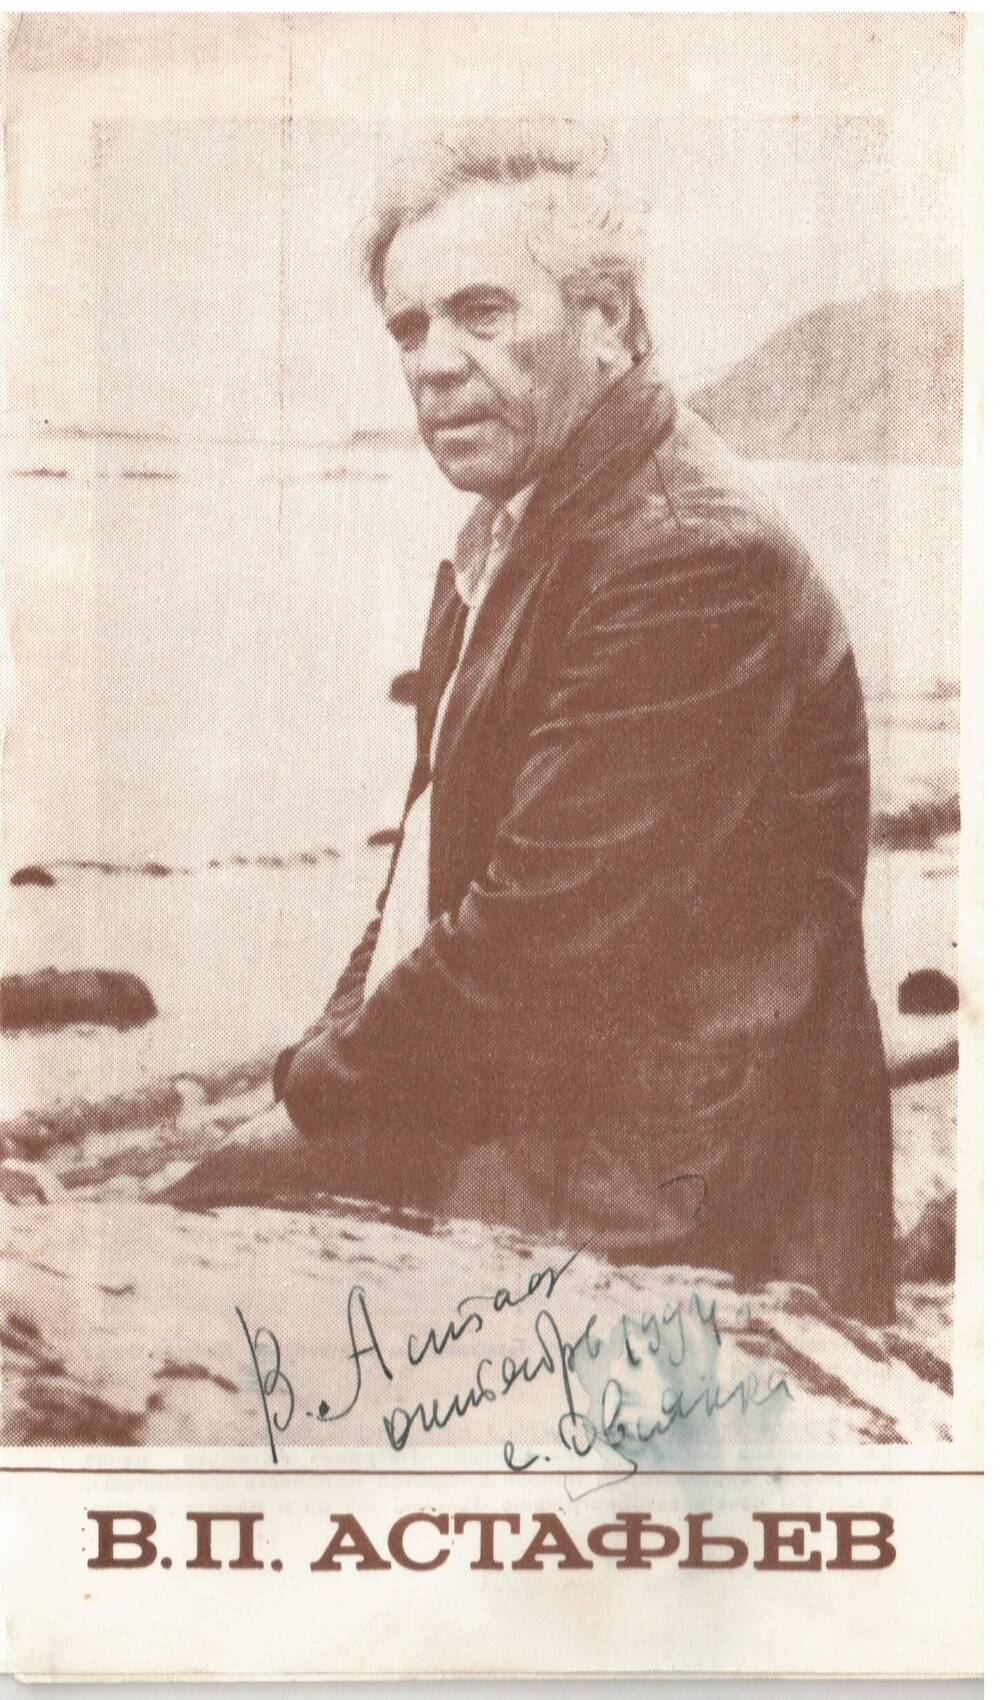 Буклет с автографом В.П. Астафьева. В.П. Астафьева. г. Красноярск. 1989г.